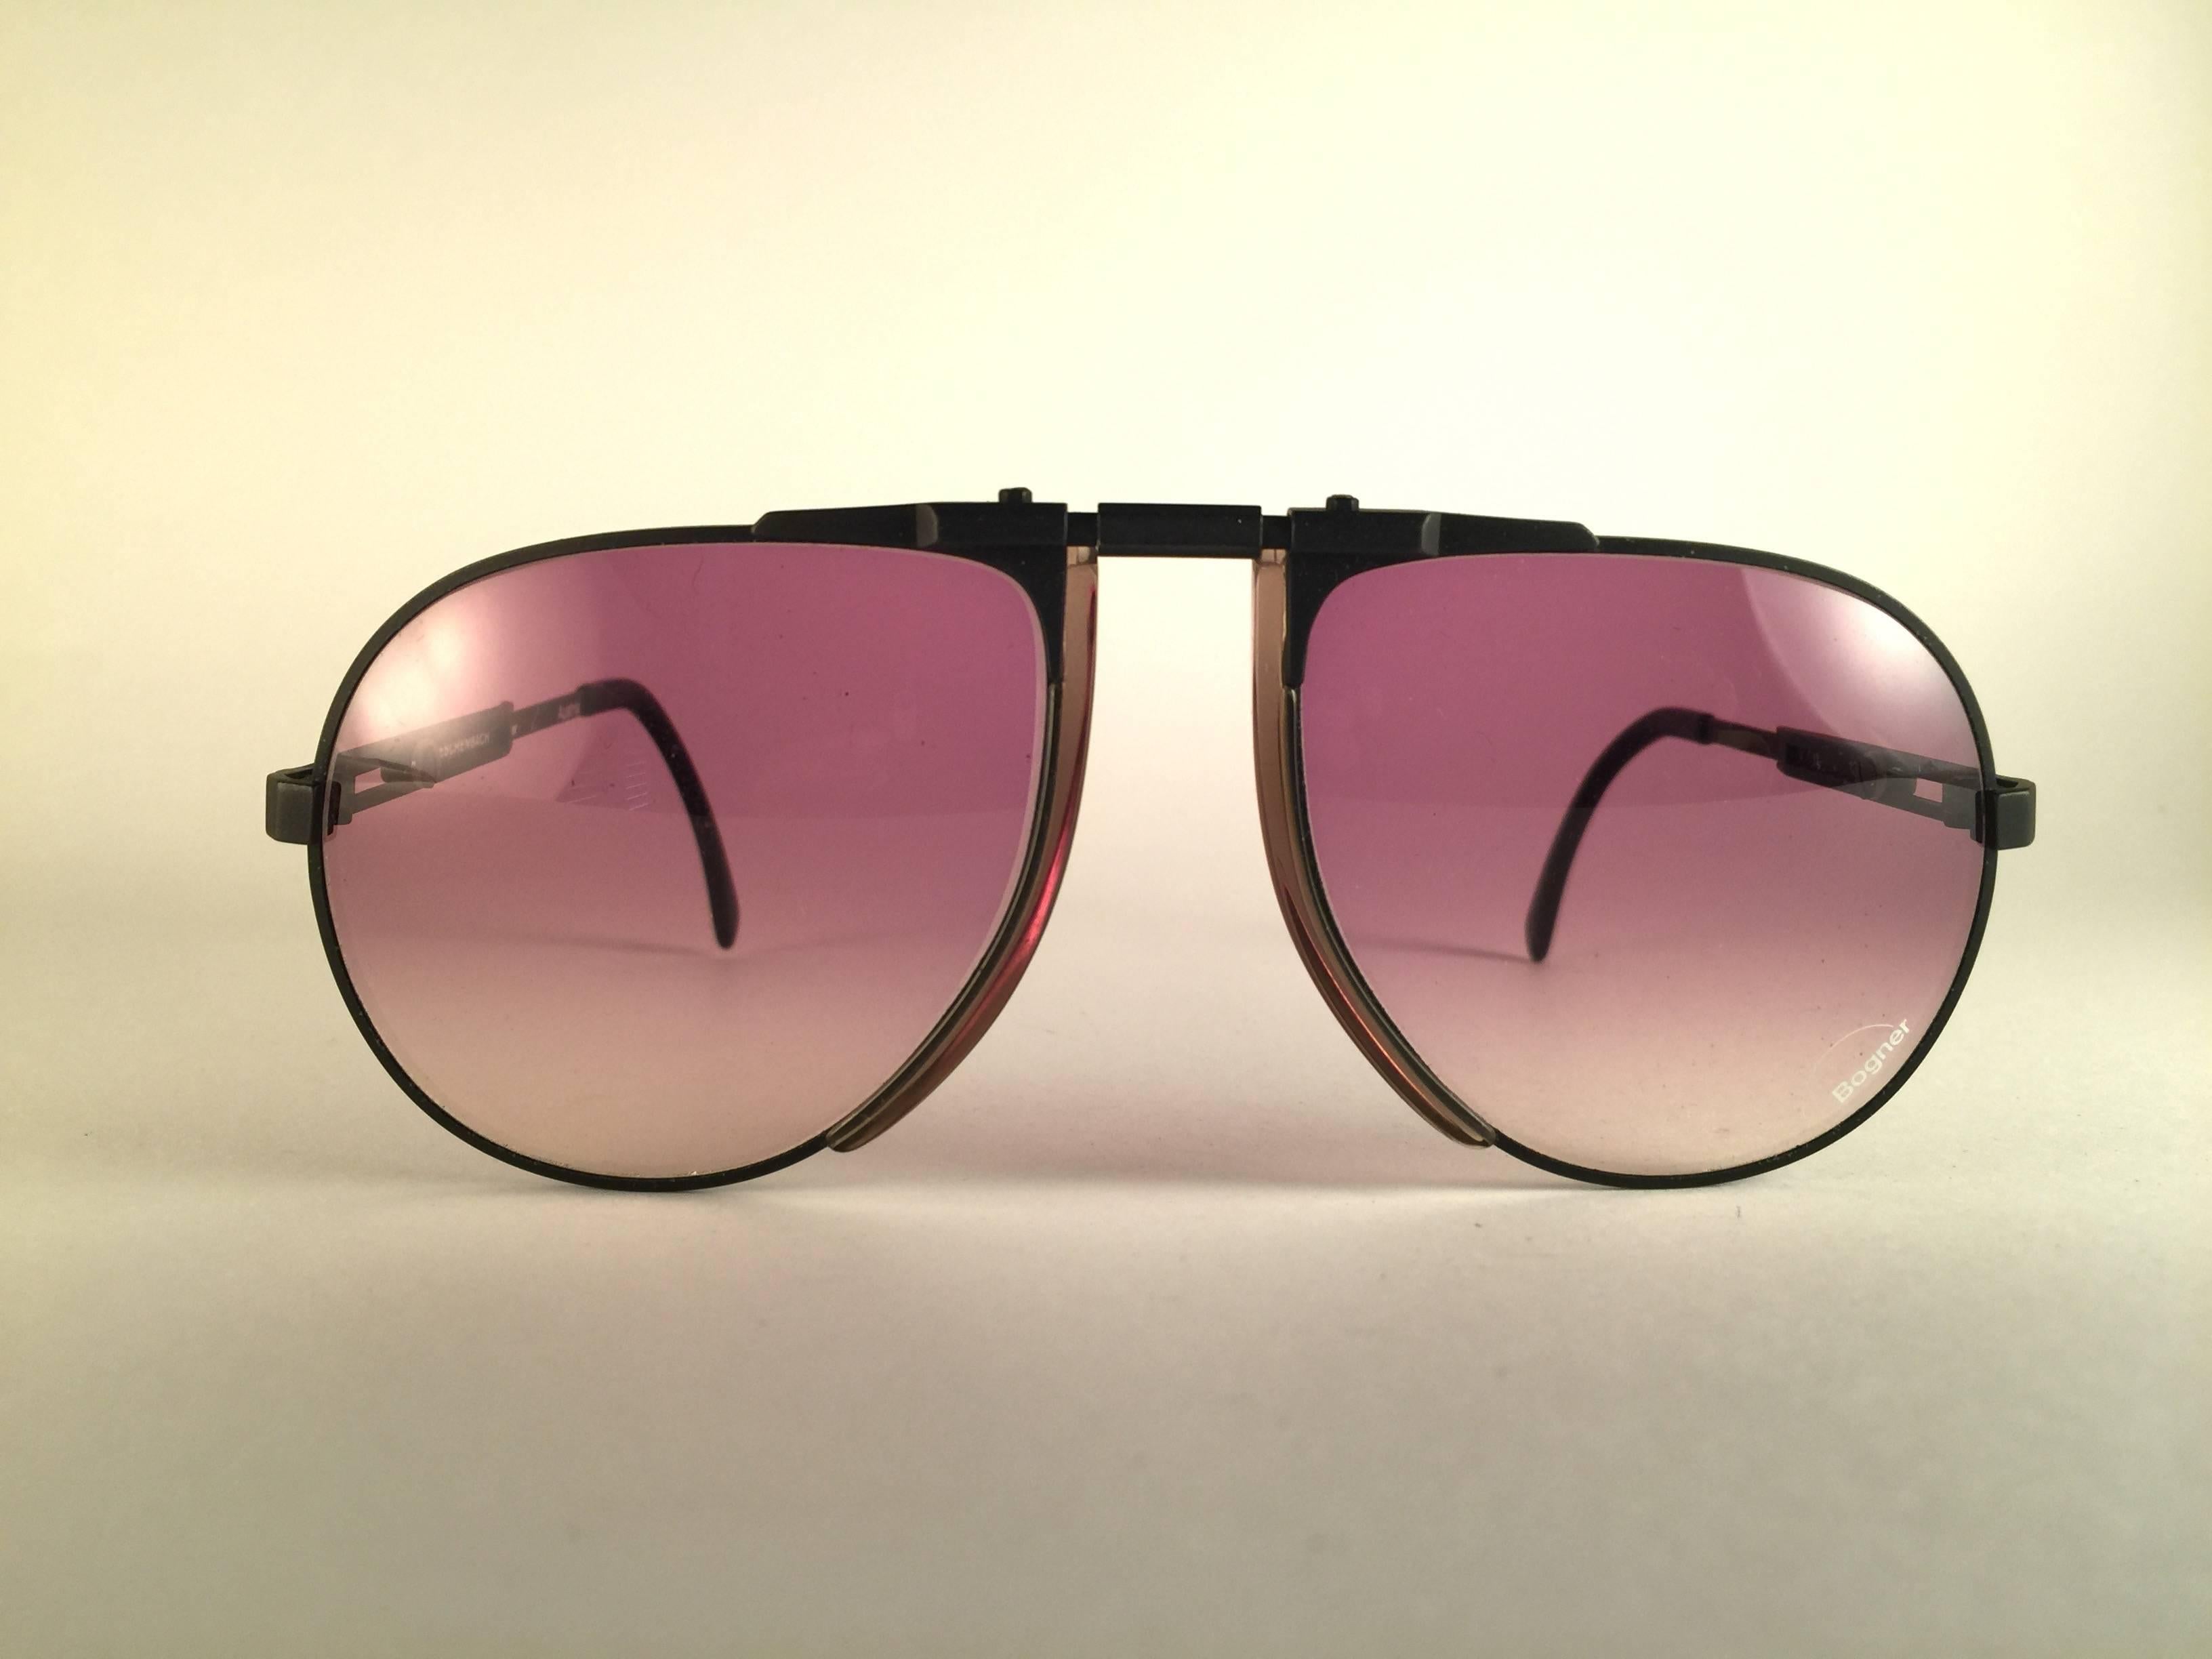 eschenbach sunglasses price